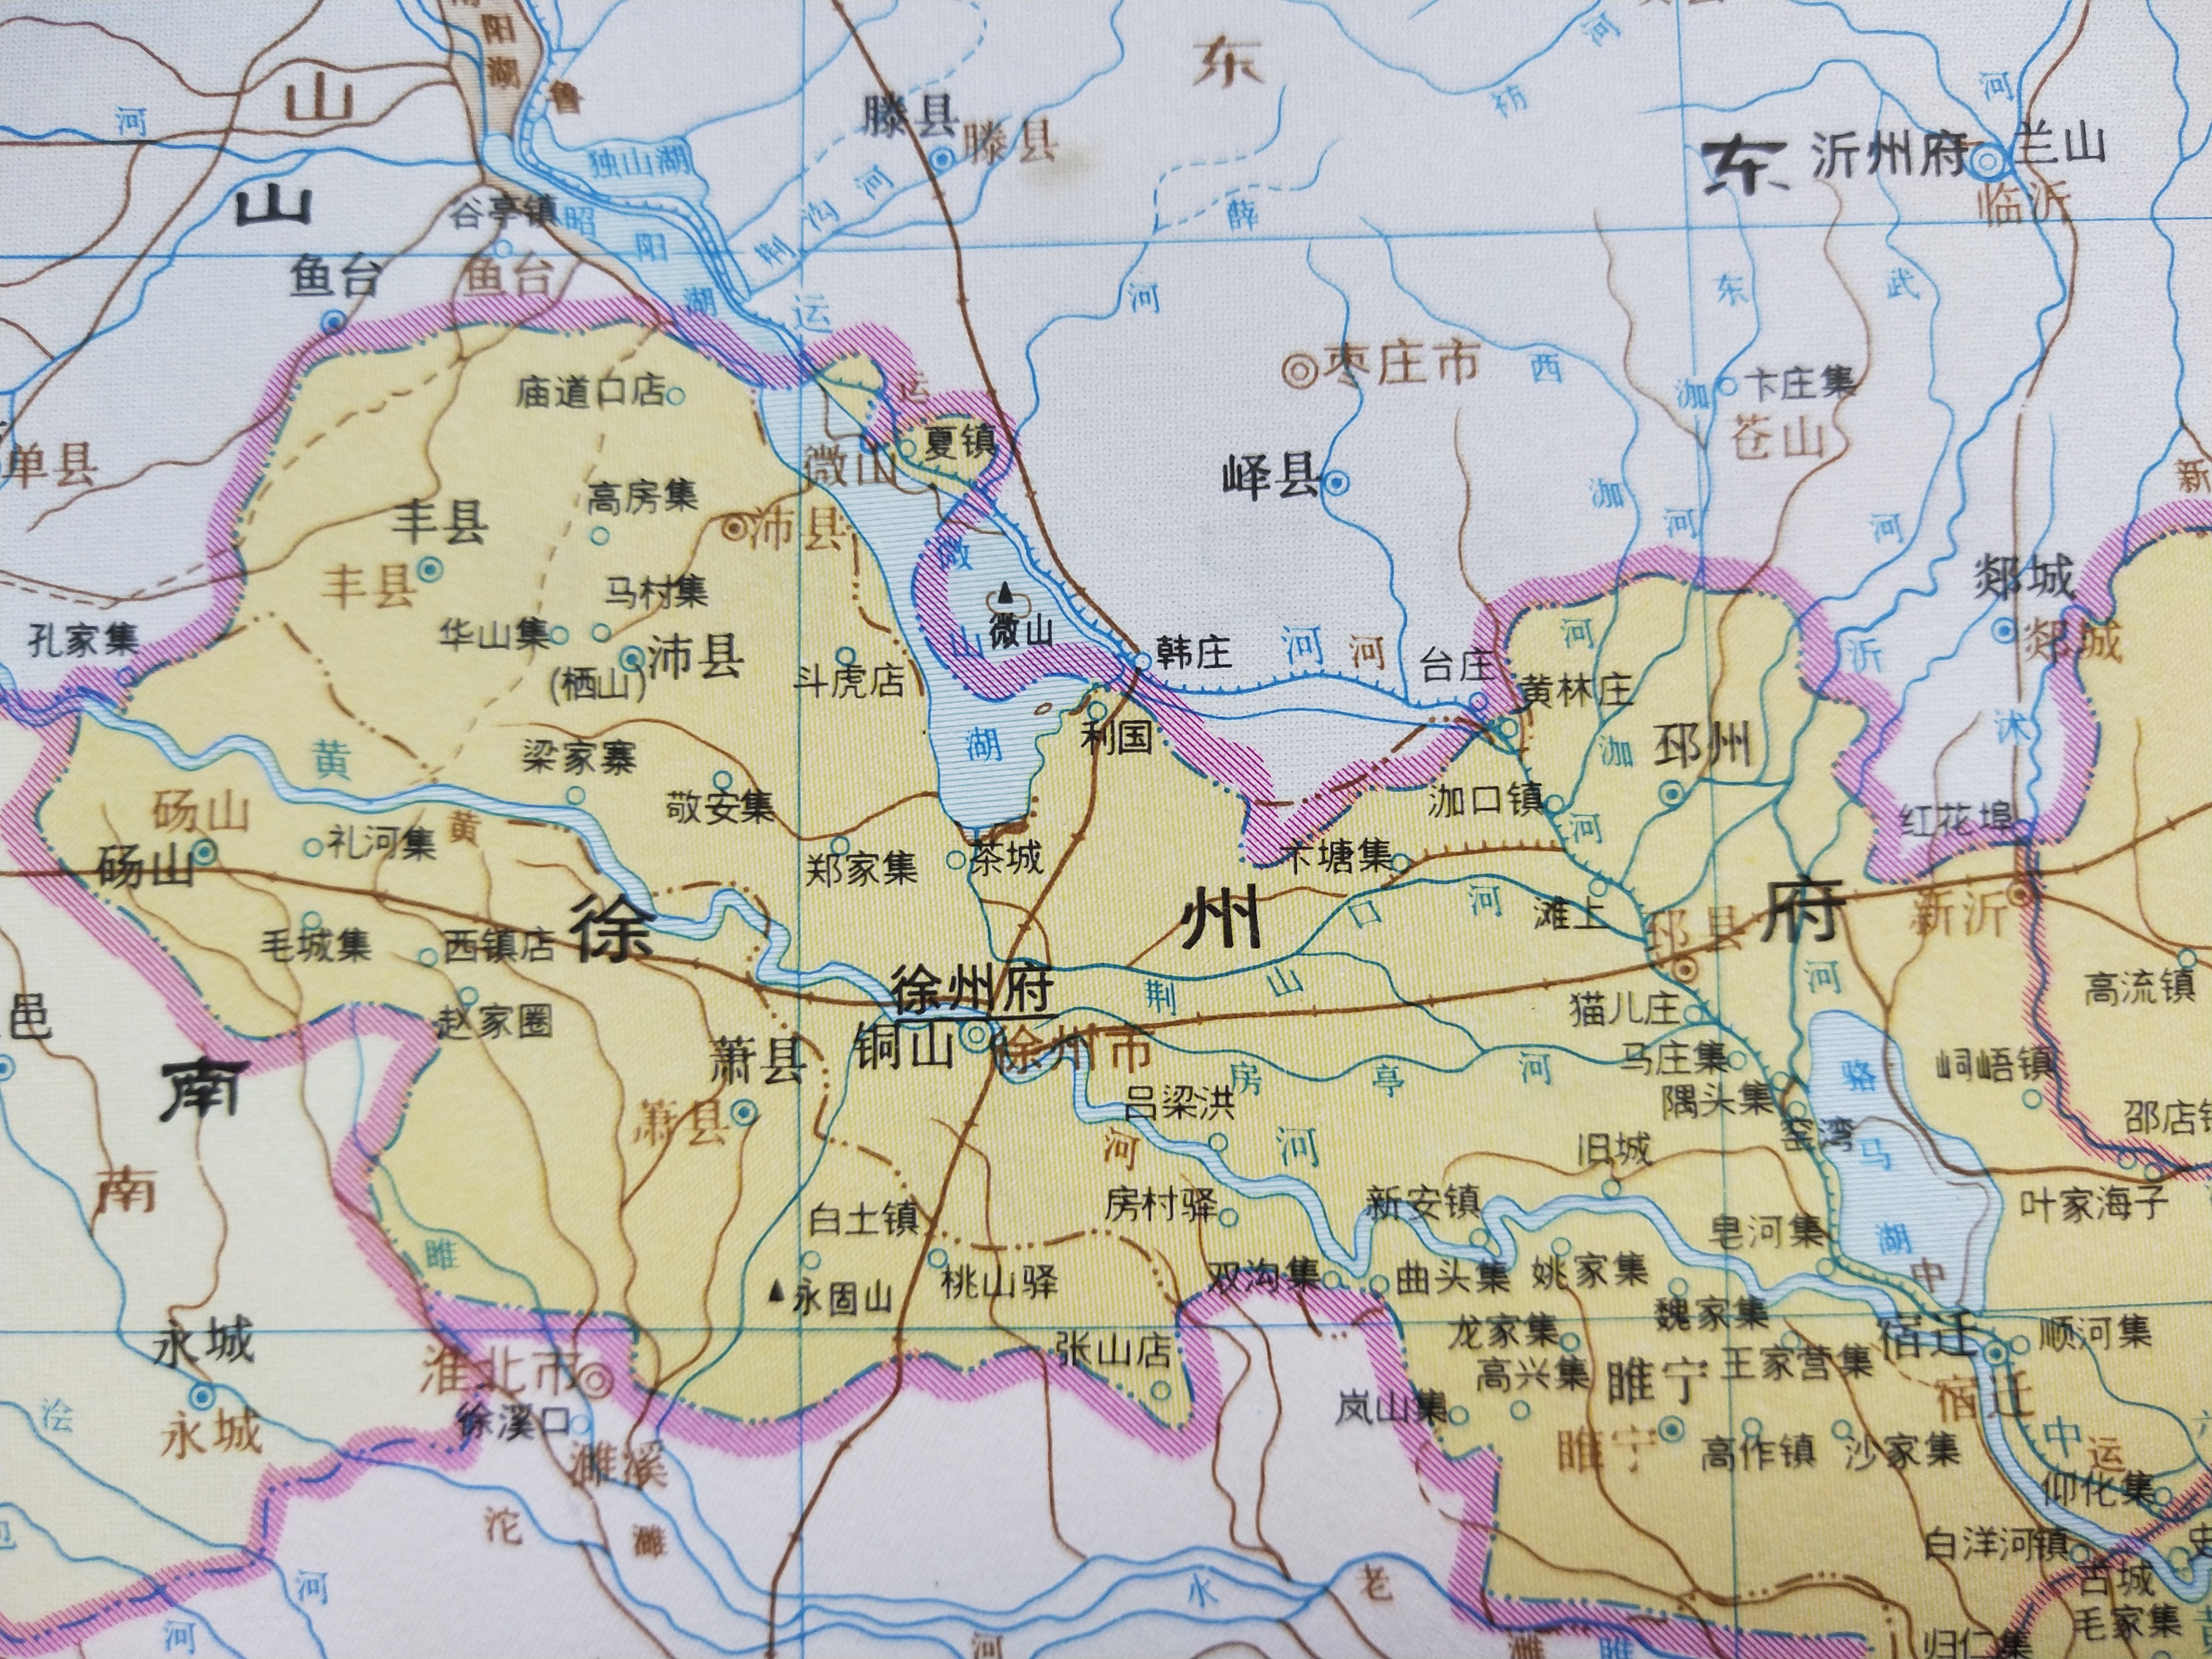 古地名演变:江苏徐州古地名演变过程